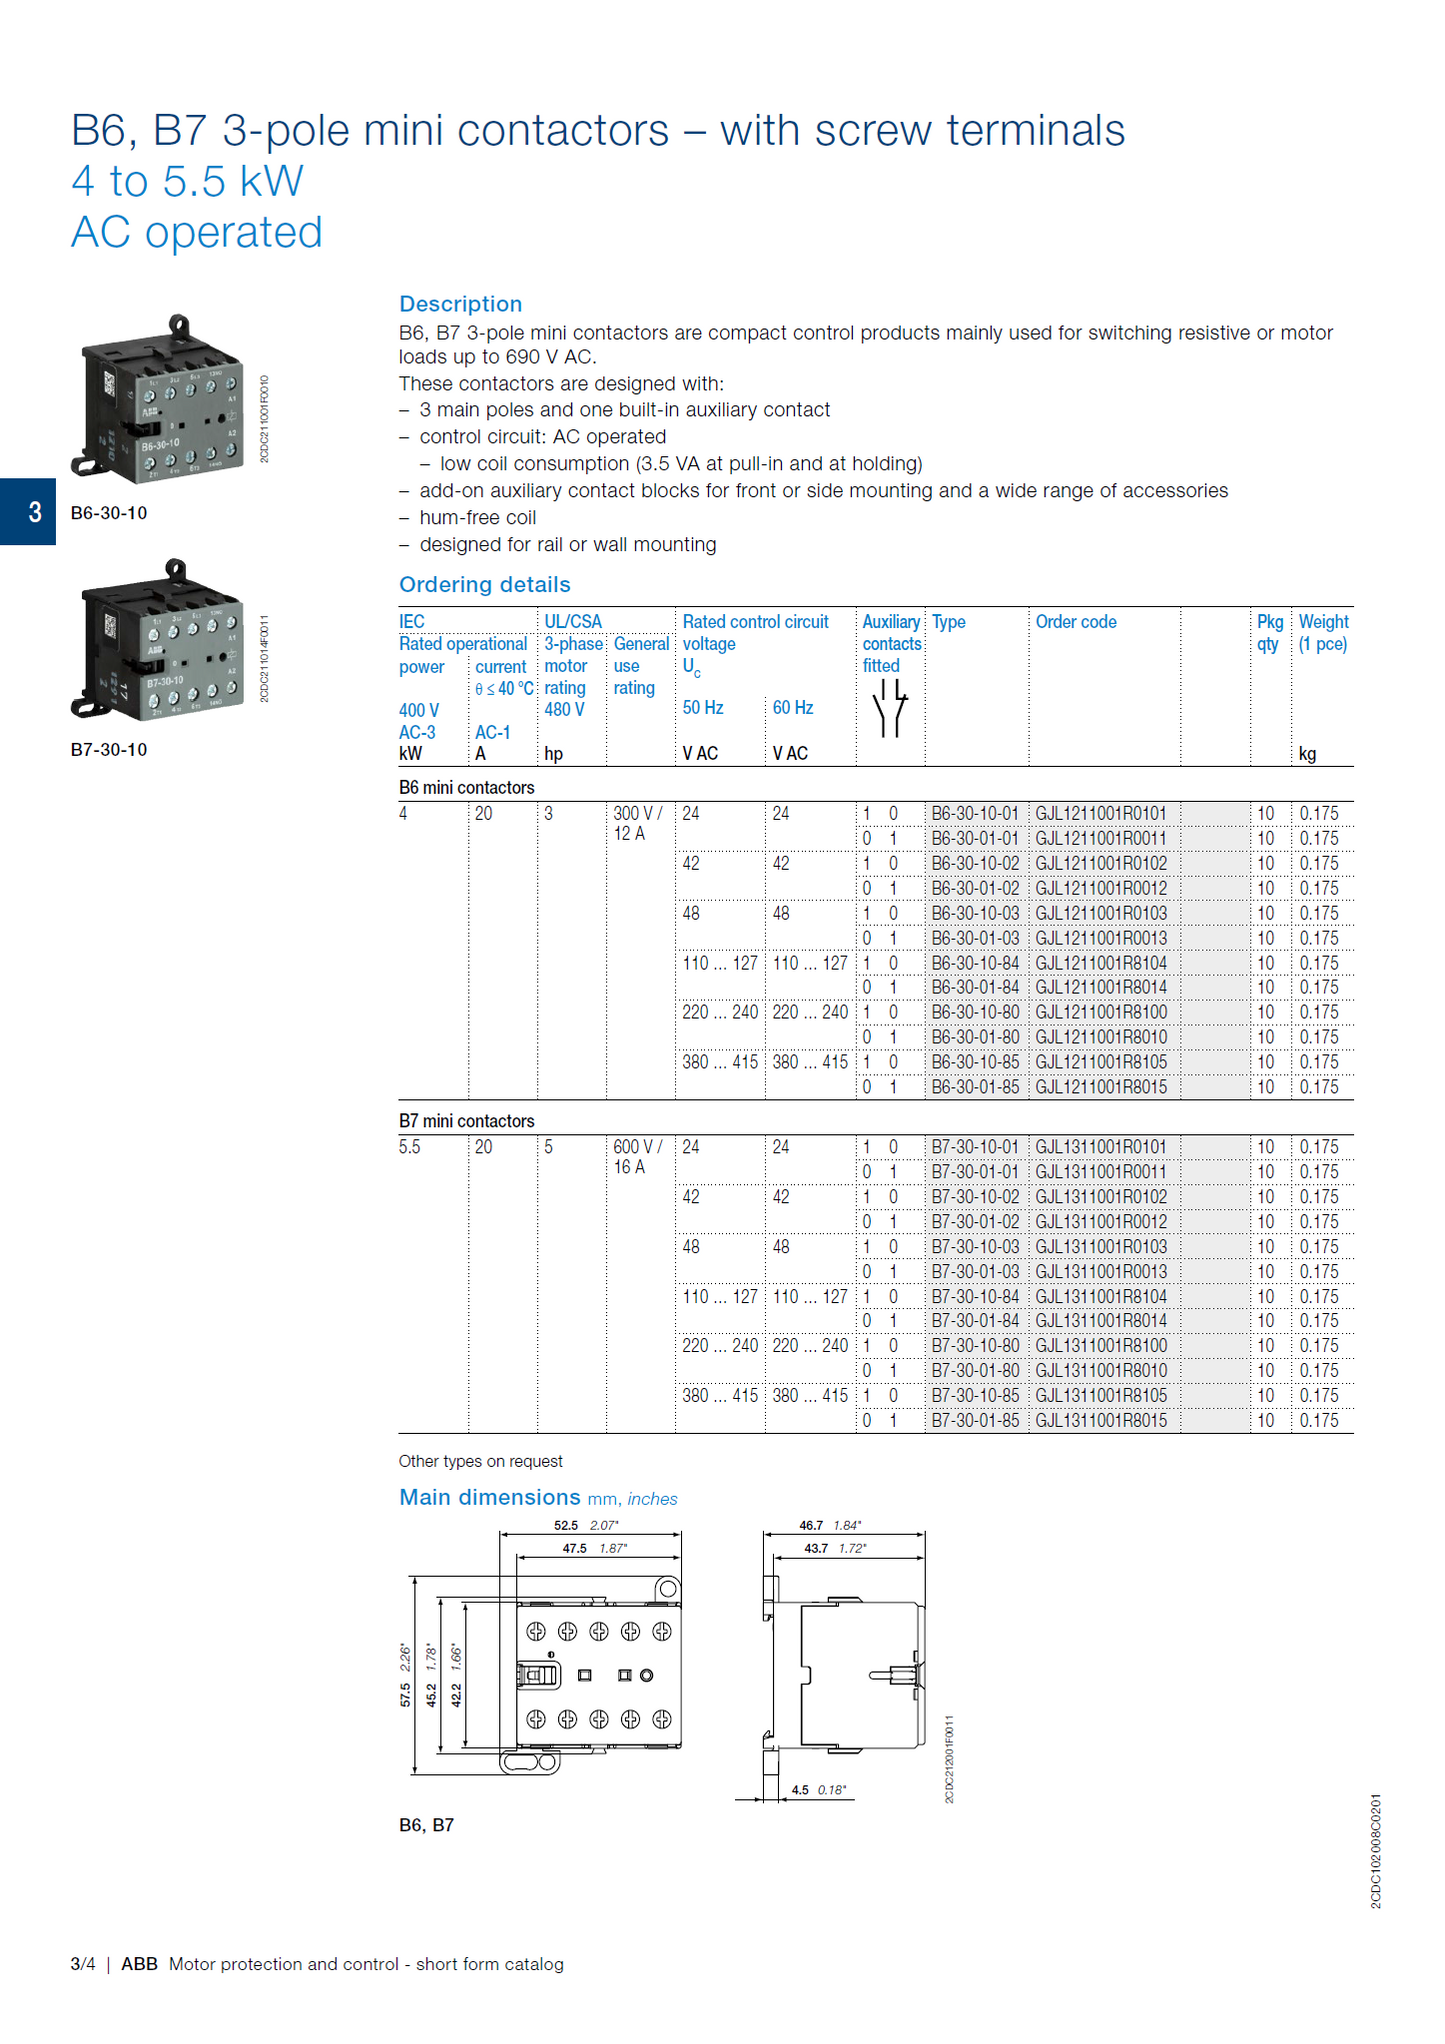 ABB B6, B7 series mini contactors: B7-30-10-P